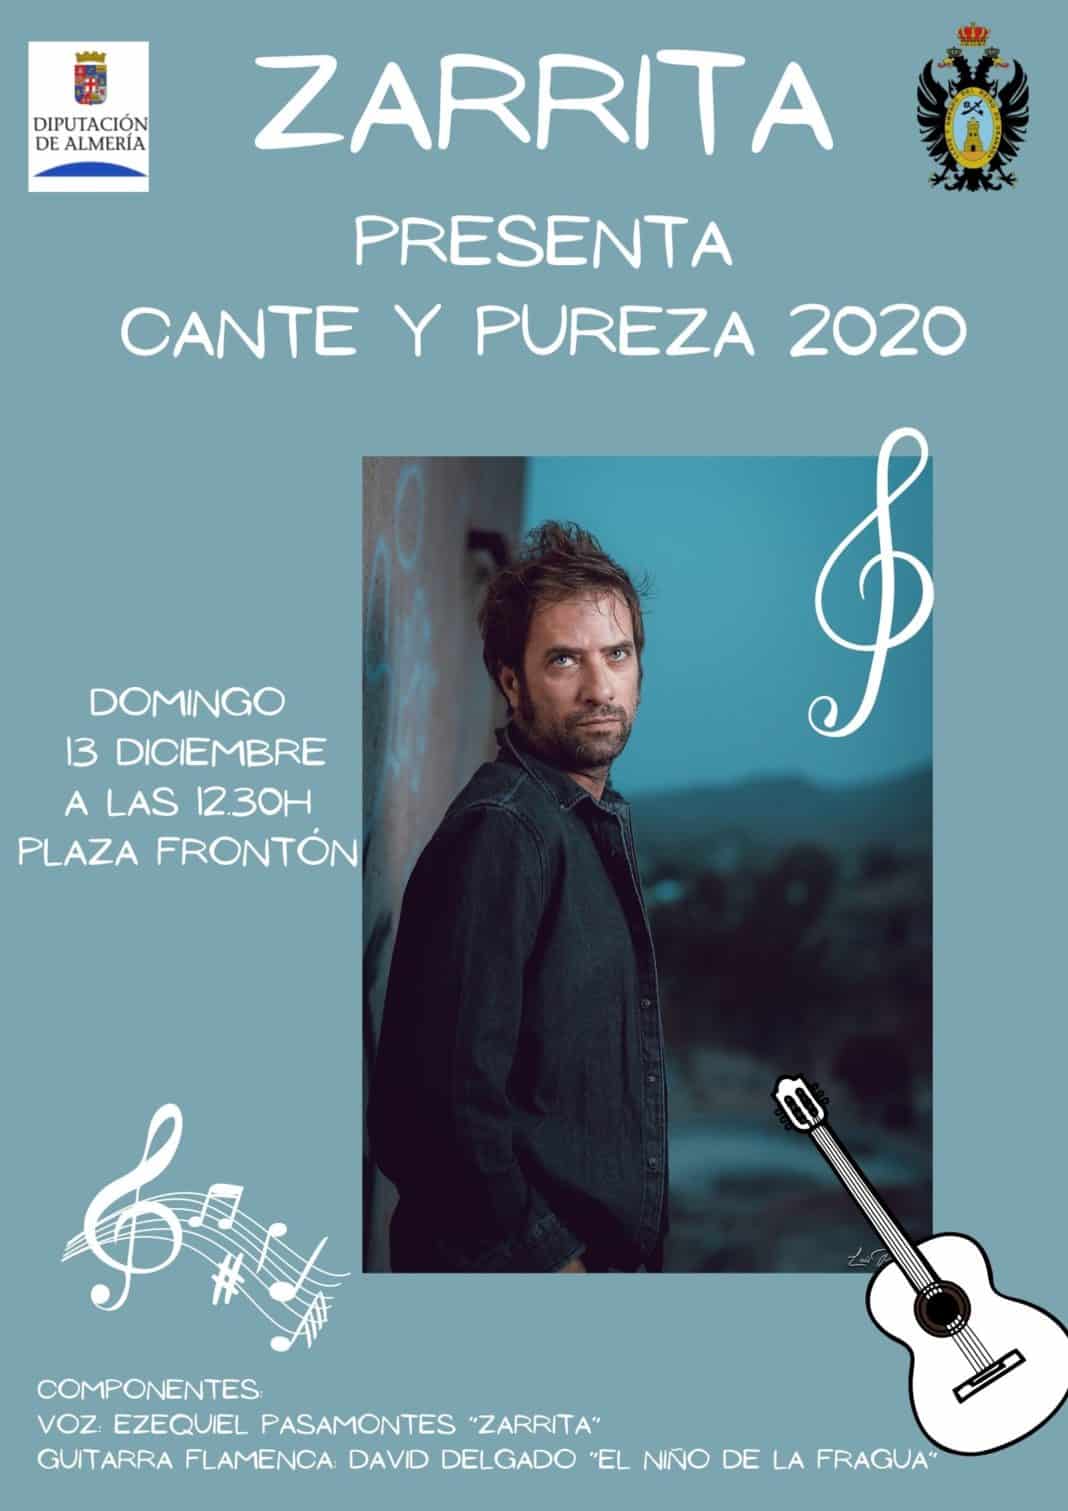 ZARRITA PRESENTA CANTE Y PUREZA 2020